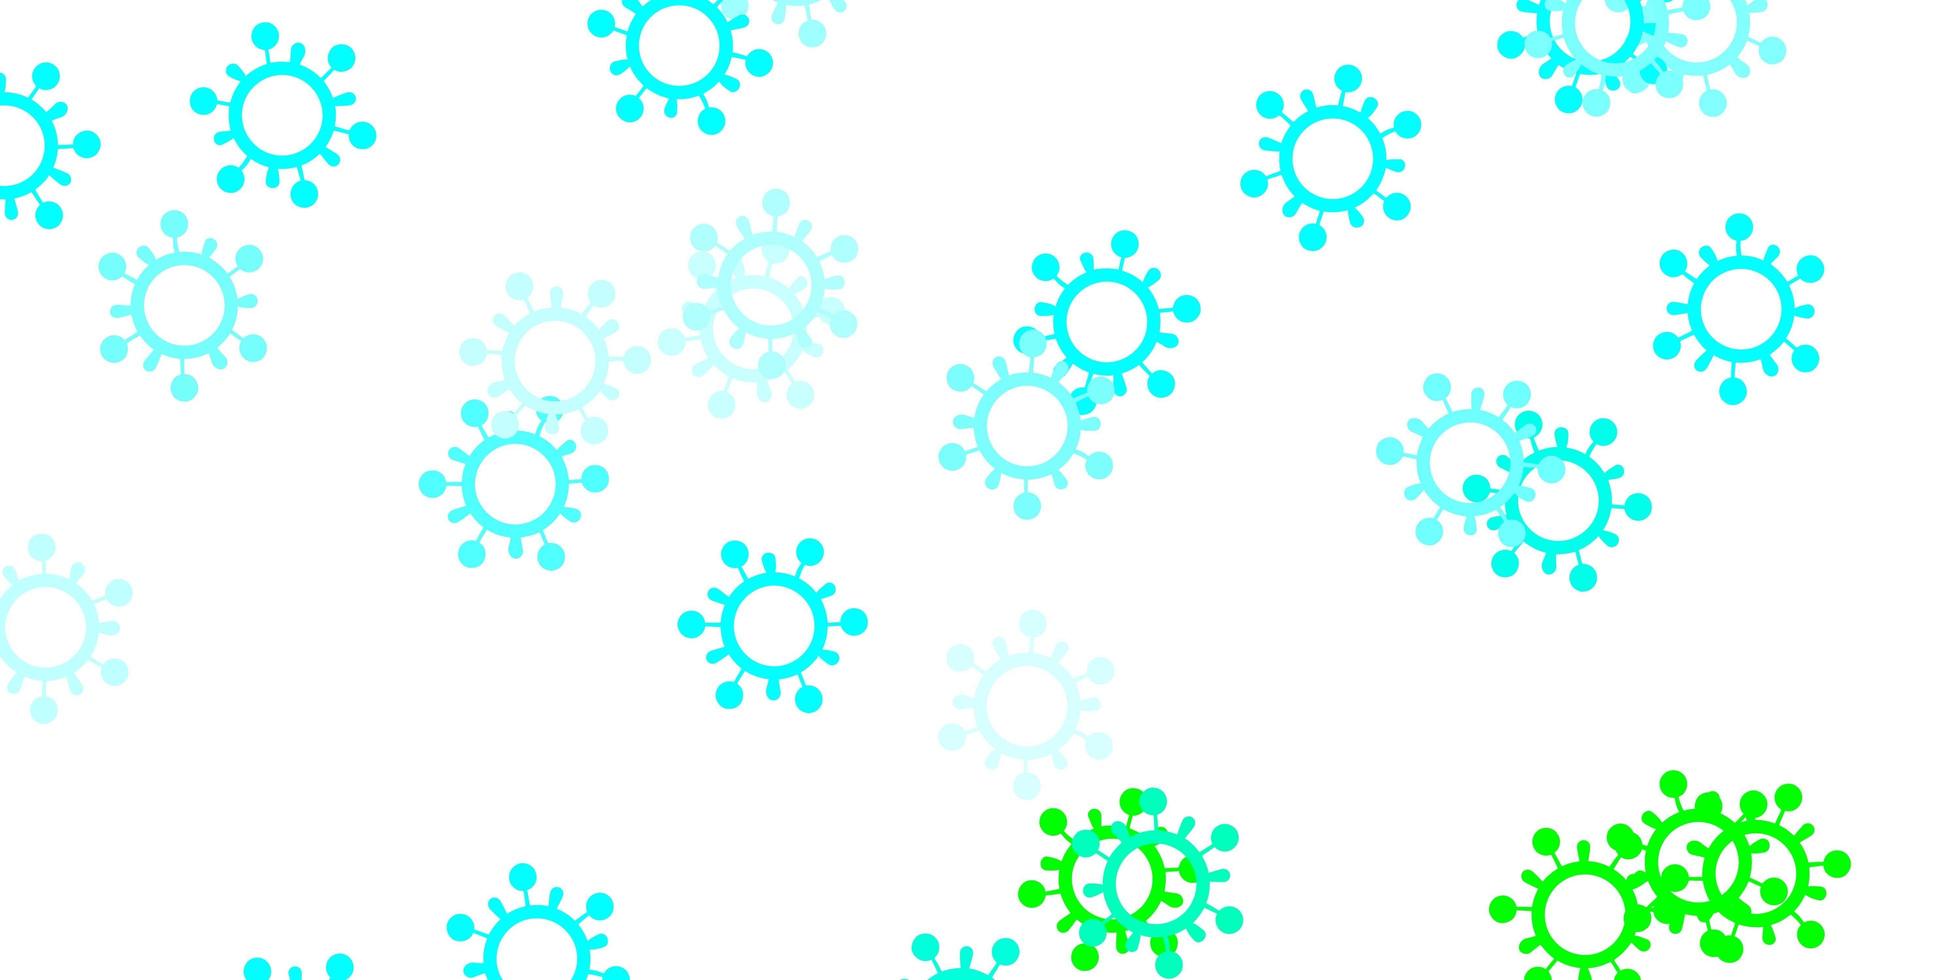 ljusblått, grönt vektormönster med coronaviruselement. vektor